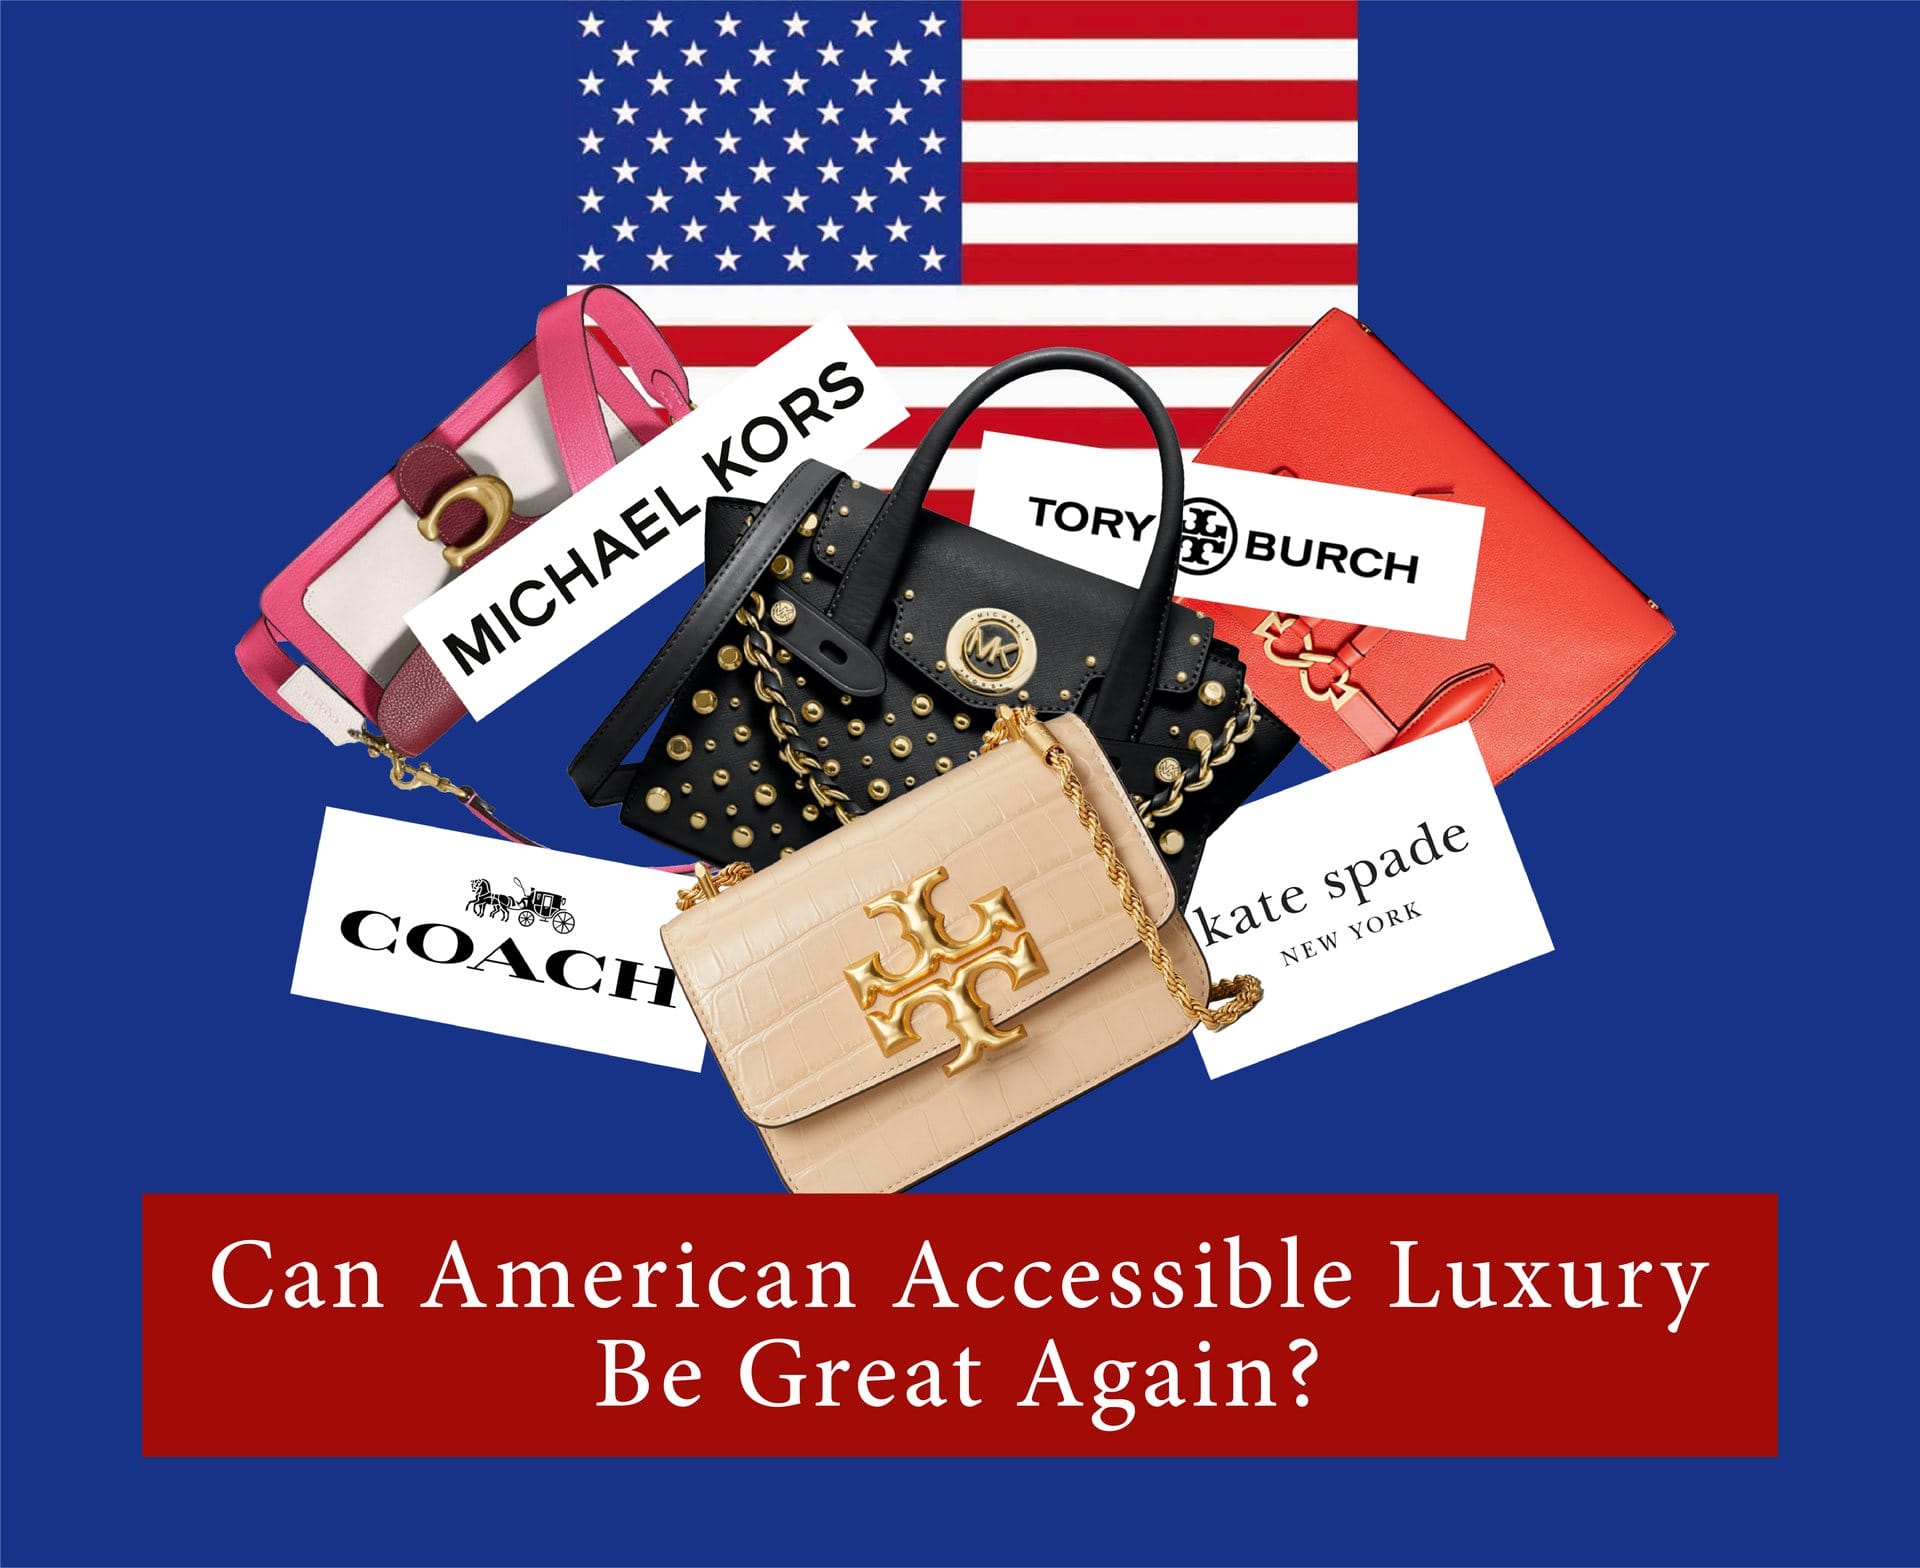 Quel avenir pour le luxe accessible américain ? 